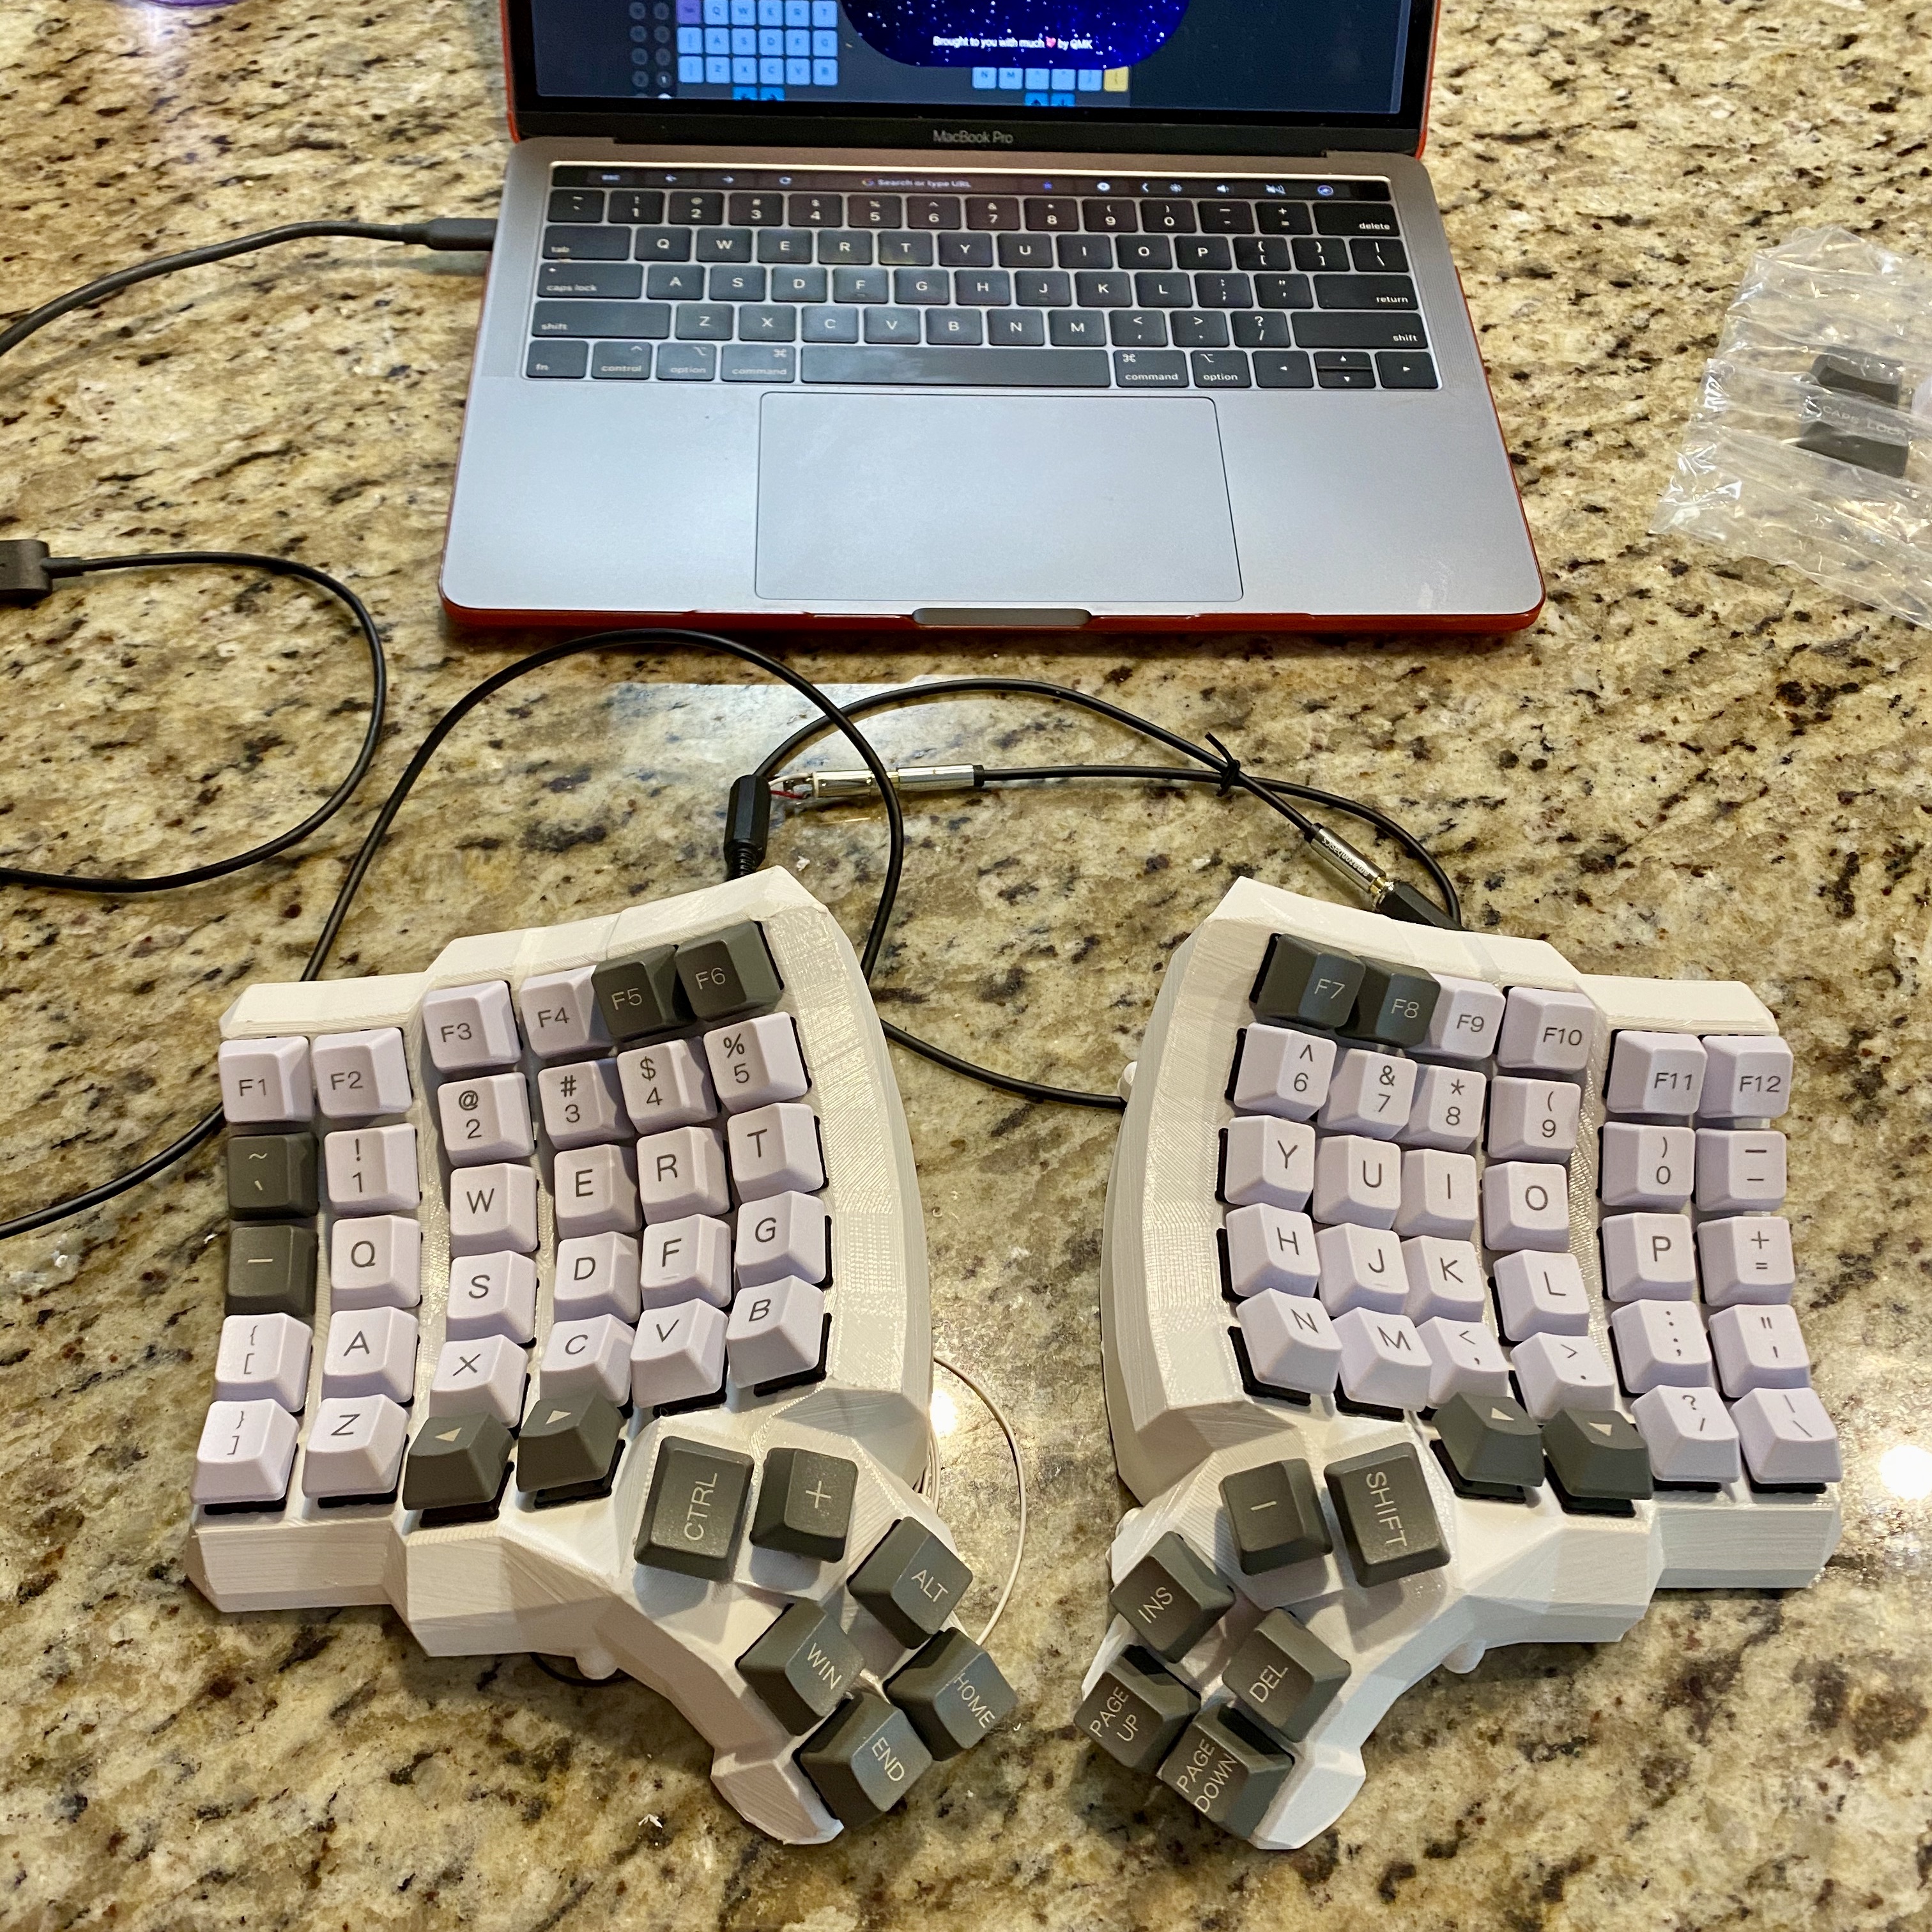 The finished keyboard